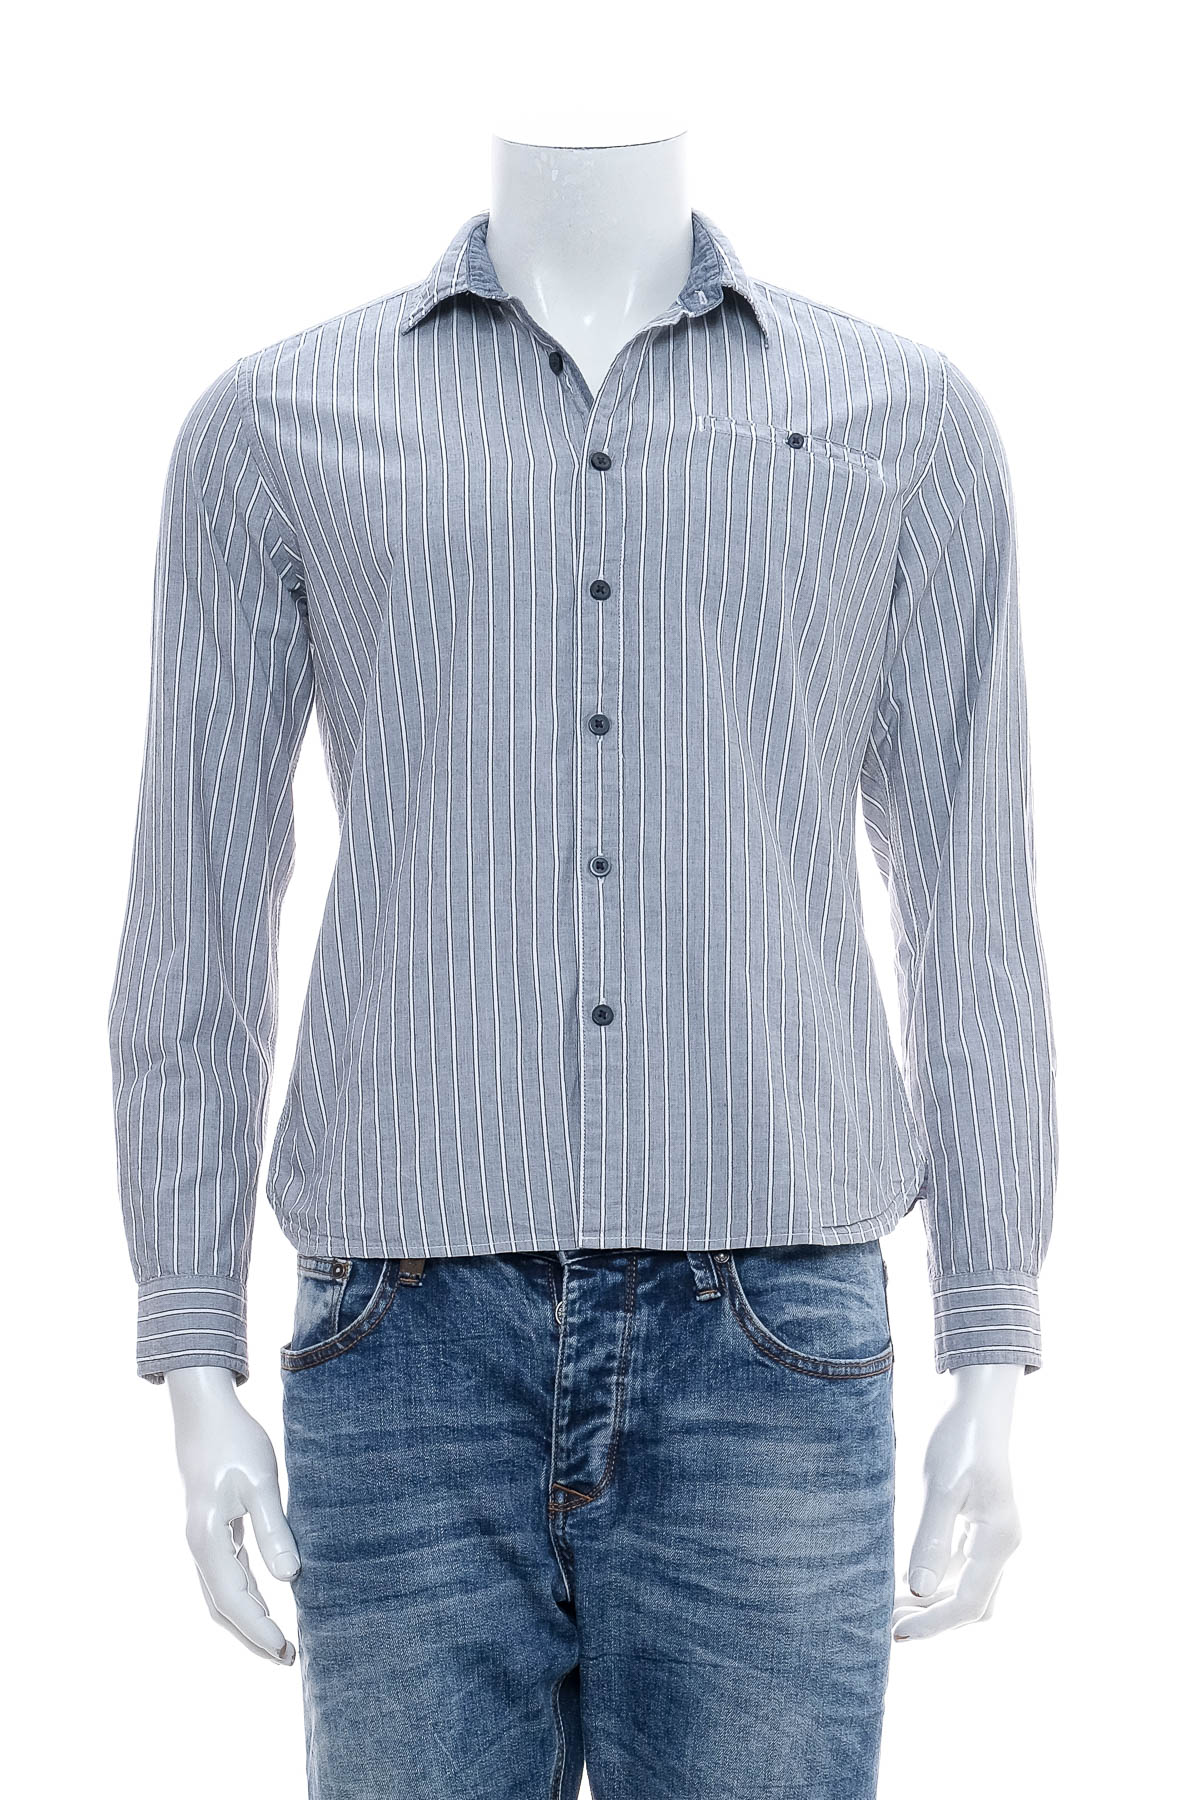 Ανδρικό πουκάμισο - ESPRIT - 0